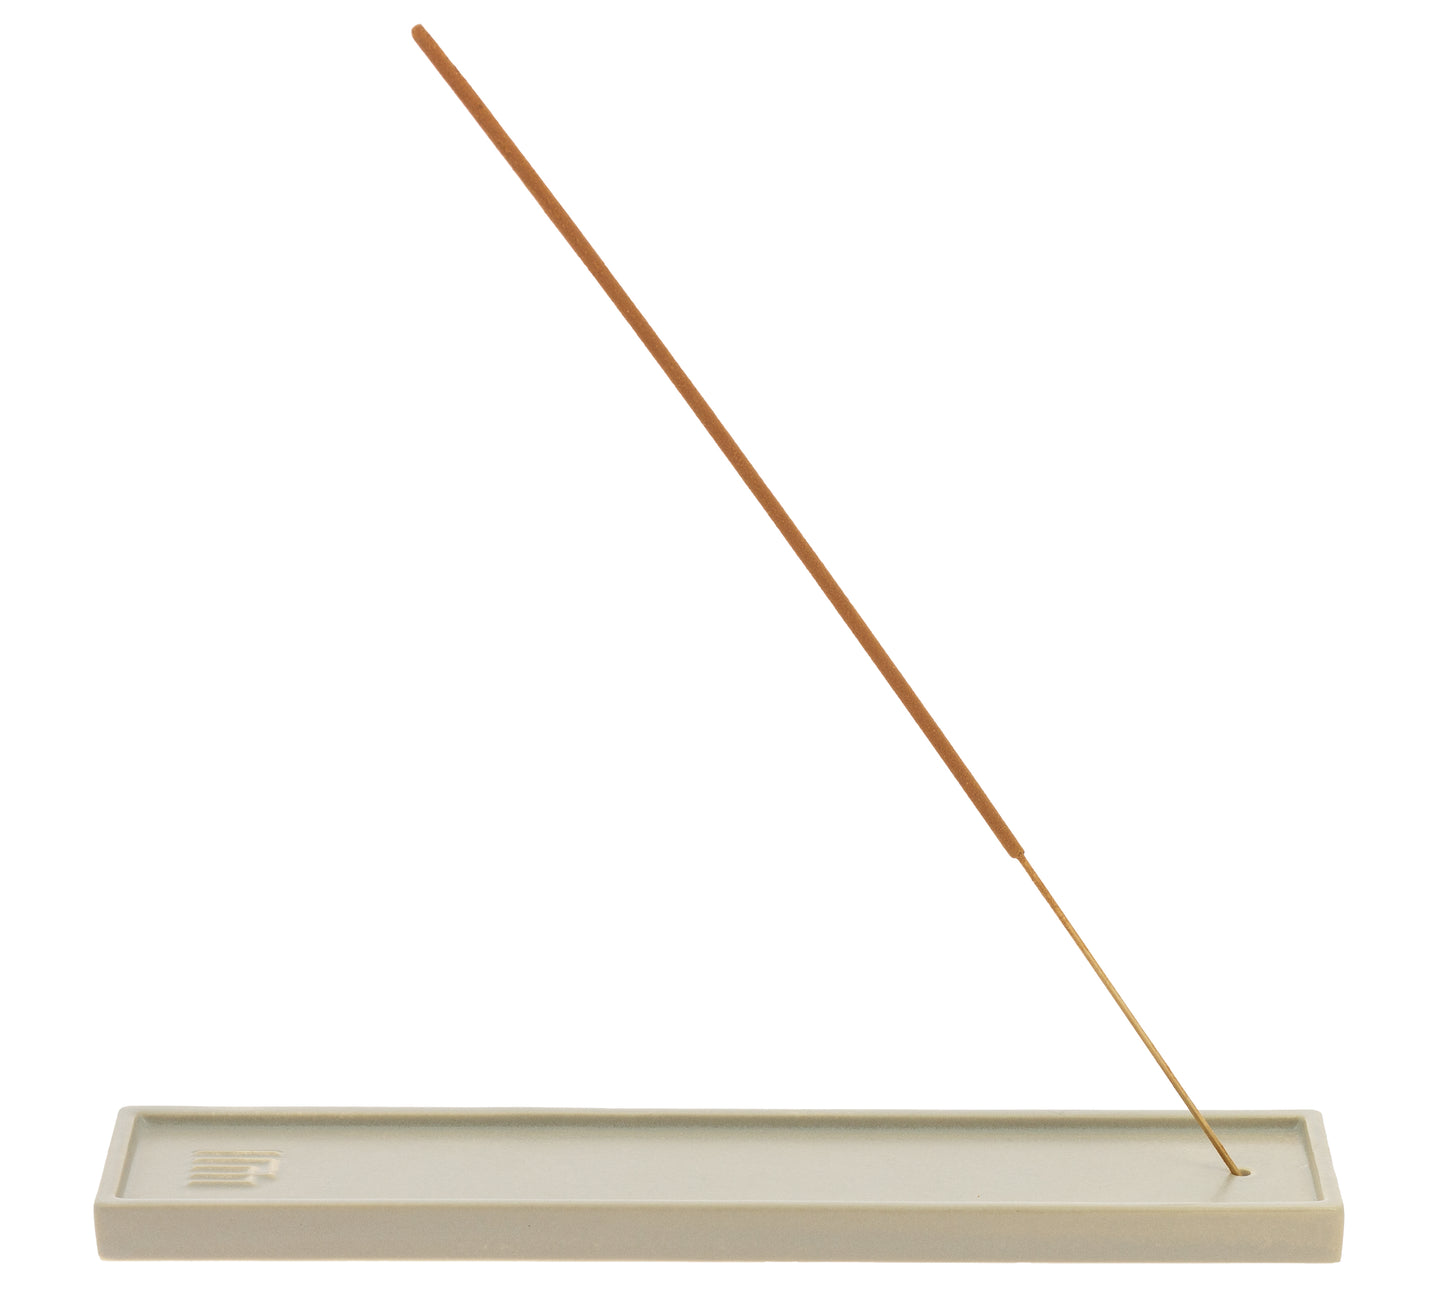 Yukari Incense Burner - Long, Gray